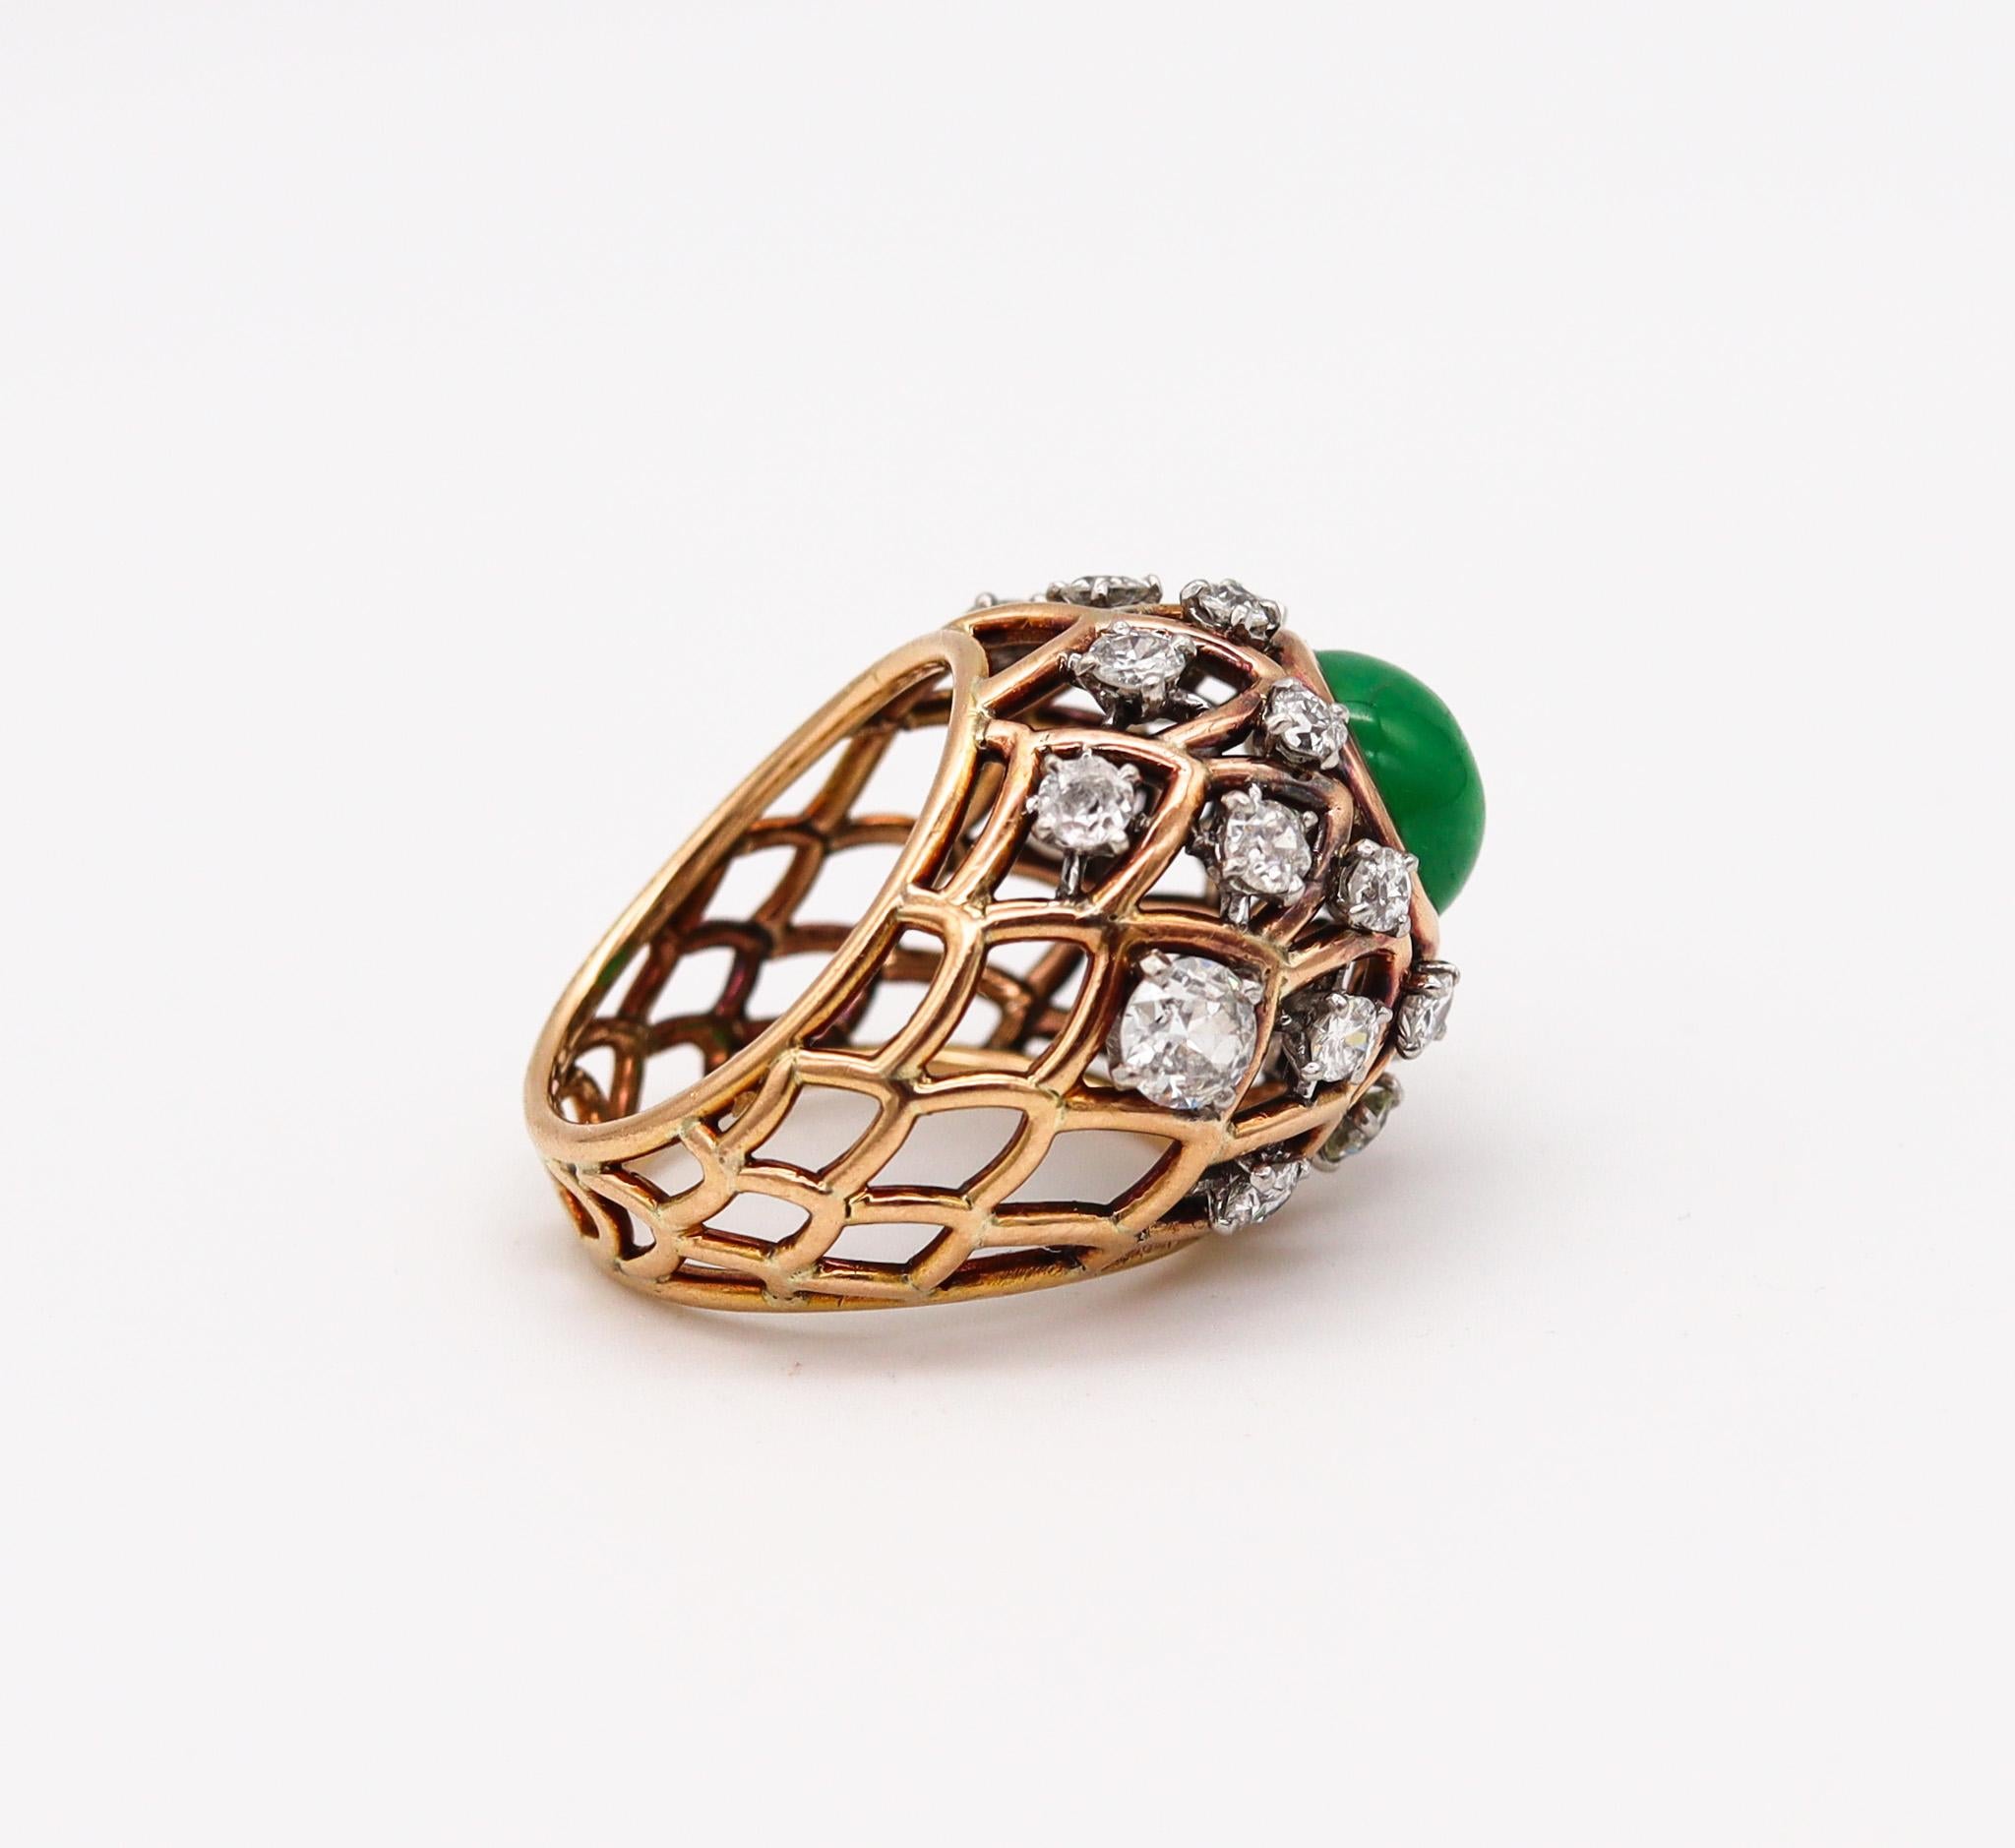 Cocktailring, entworfen von Boucheron.

Wunderschöner Ring, der 1935 in Paris vom Juwelierhaus Boucheron während der Art Déco-Periode geschaffen wurde. Dieser großartige Ring wurde sorgfältig aus massivem 18-karätigem Gelbgold und Platinteilen für